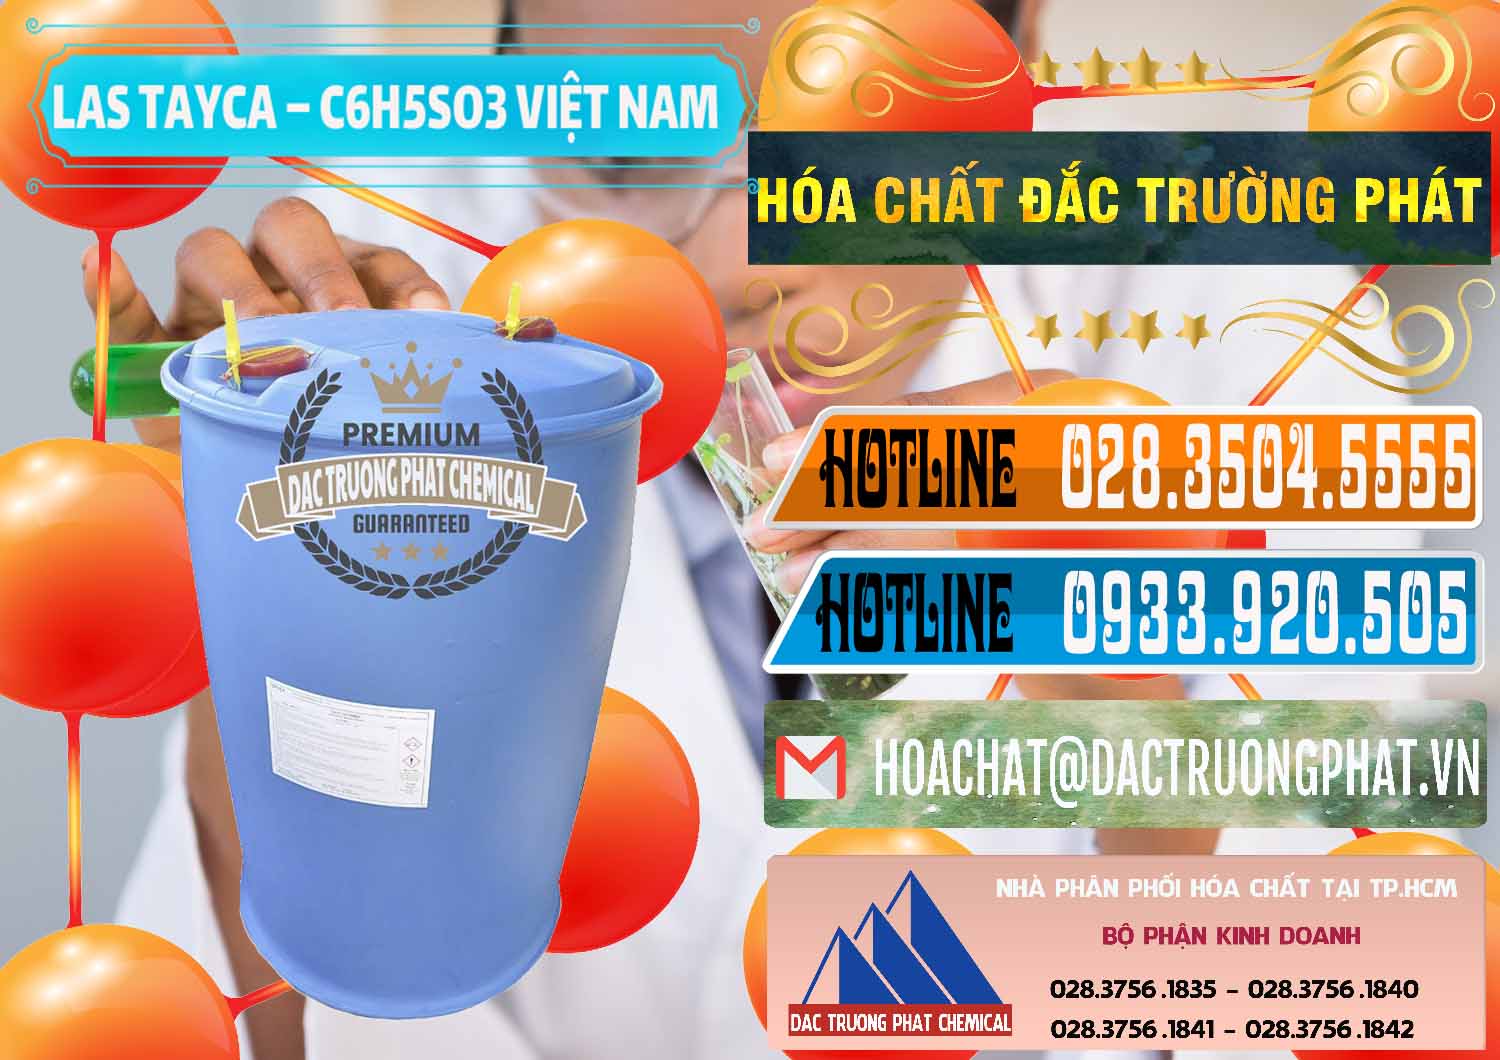 Công ty chuyên bán và cung ứng Chất tạo bọt Las Tayca Việt Nam - 0305 - Nơi cung cấp và phân phối hóa chất tại TP.HCM - stmp.net